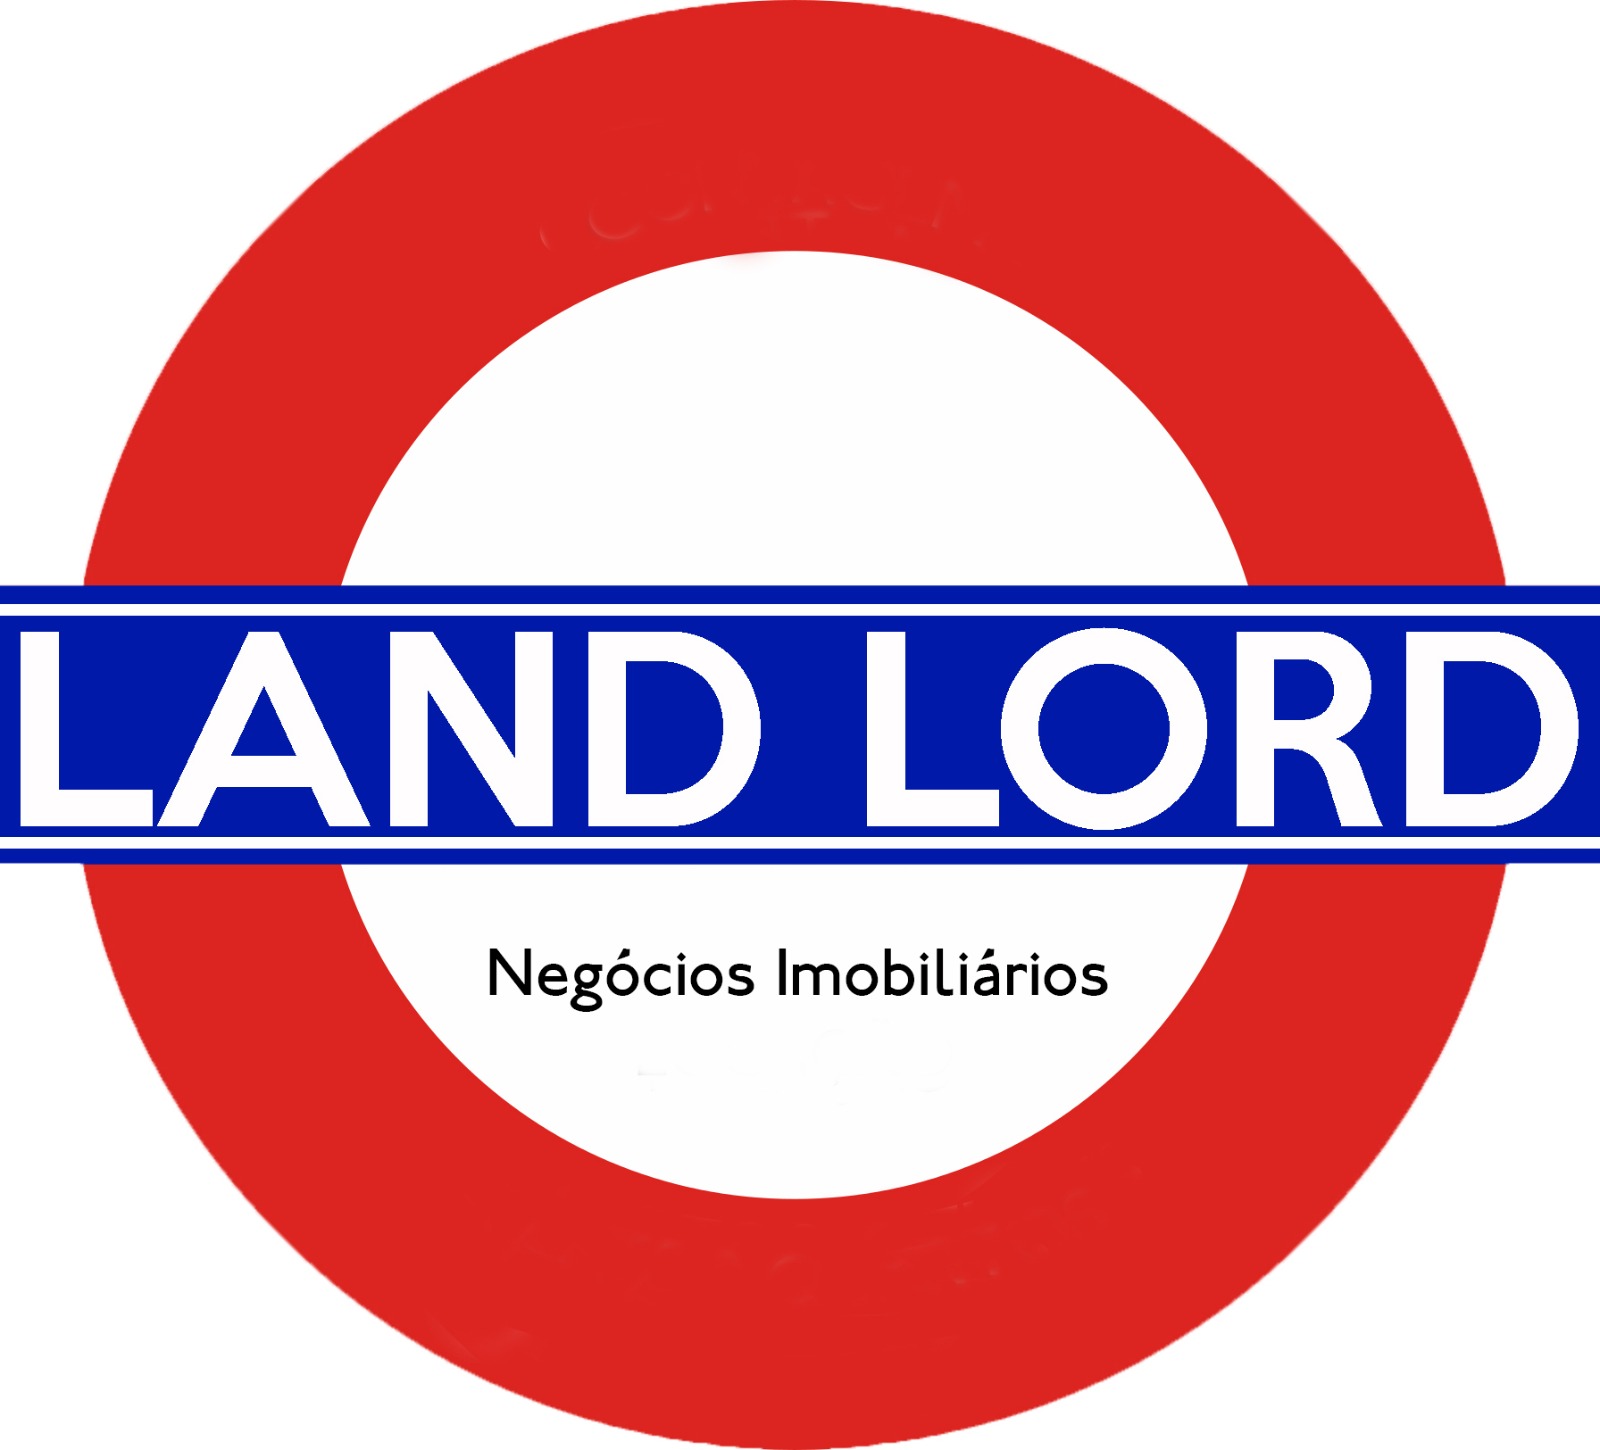 LANDLORD NEGÓCIOS IMOBILIÁRIOS